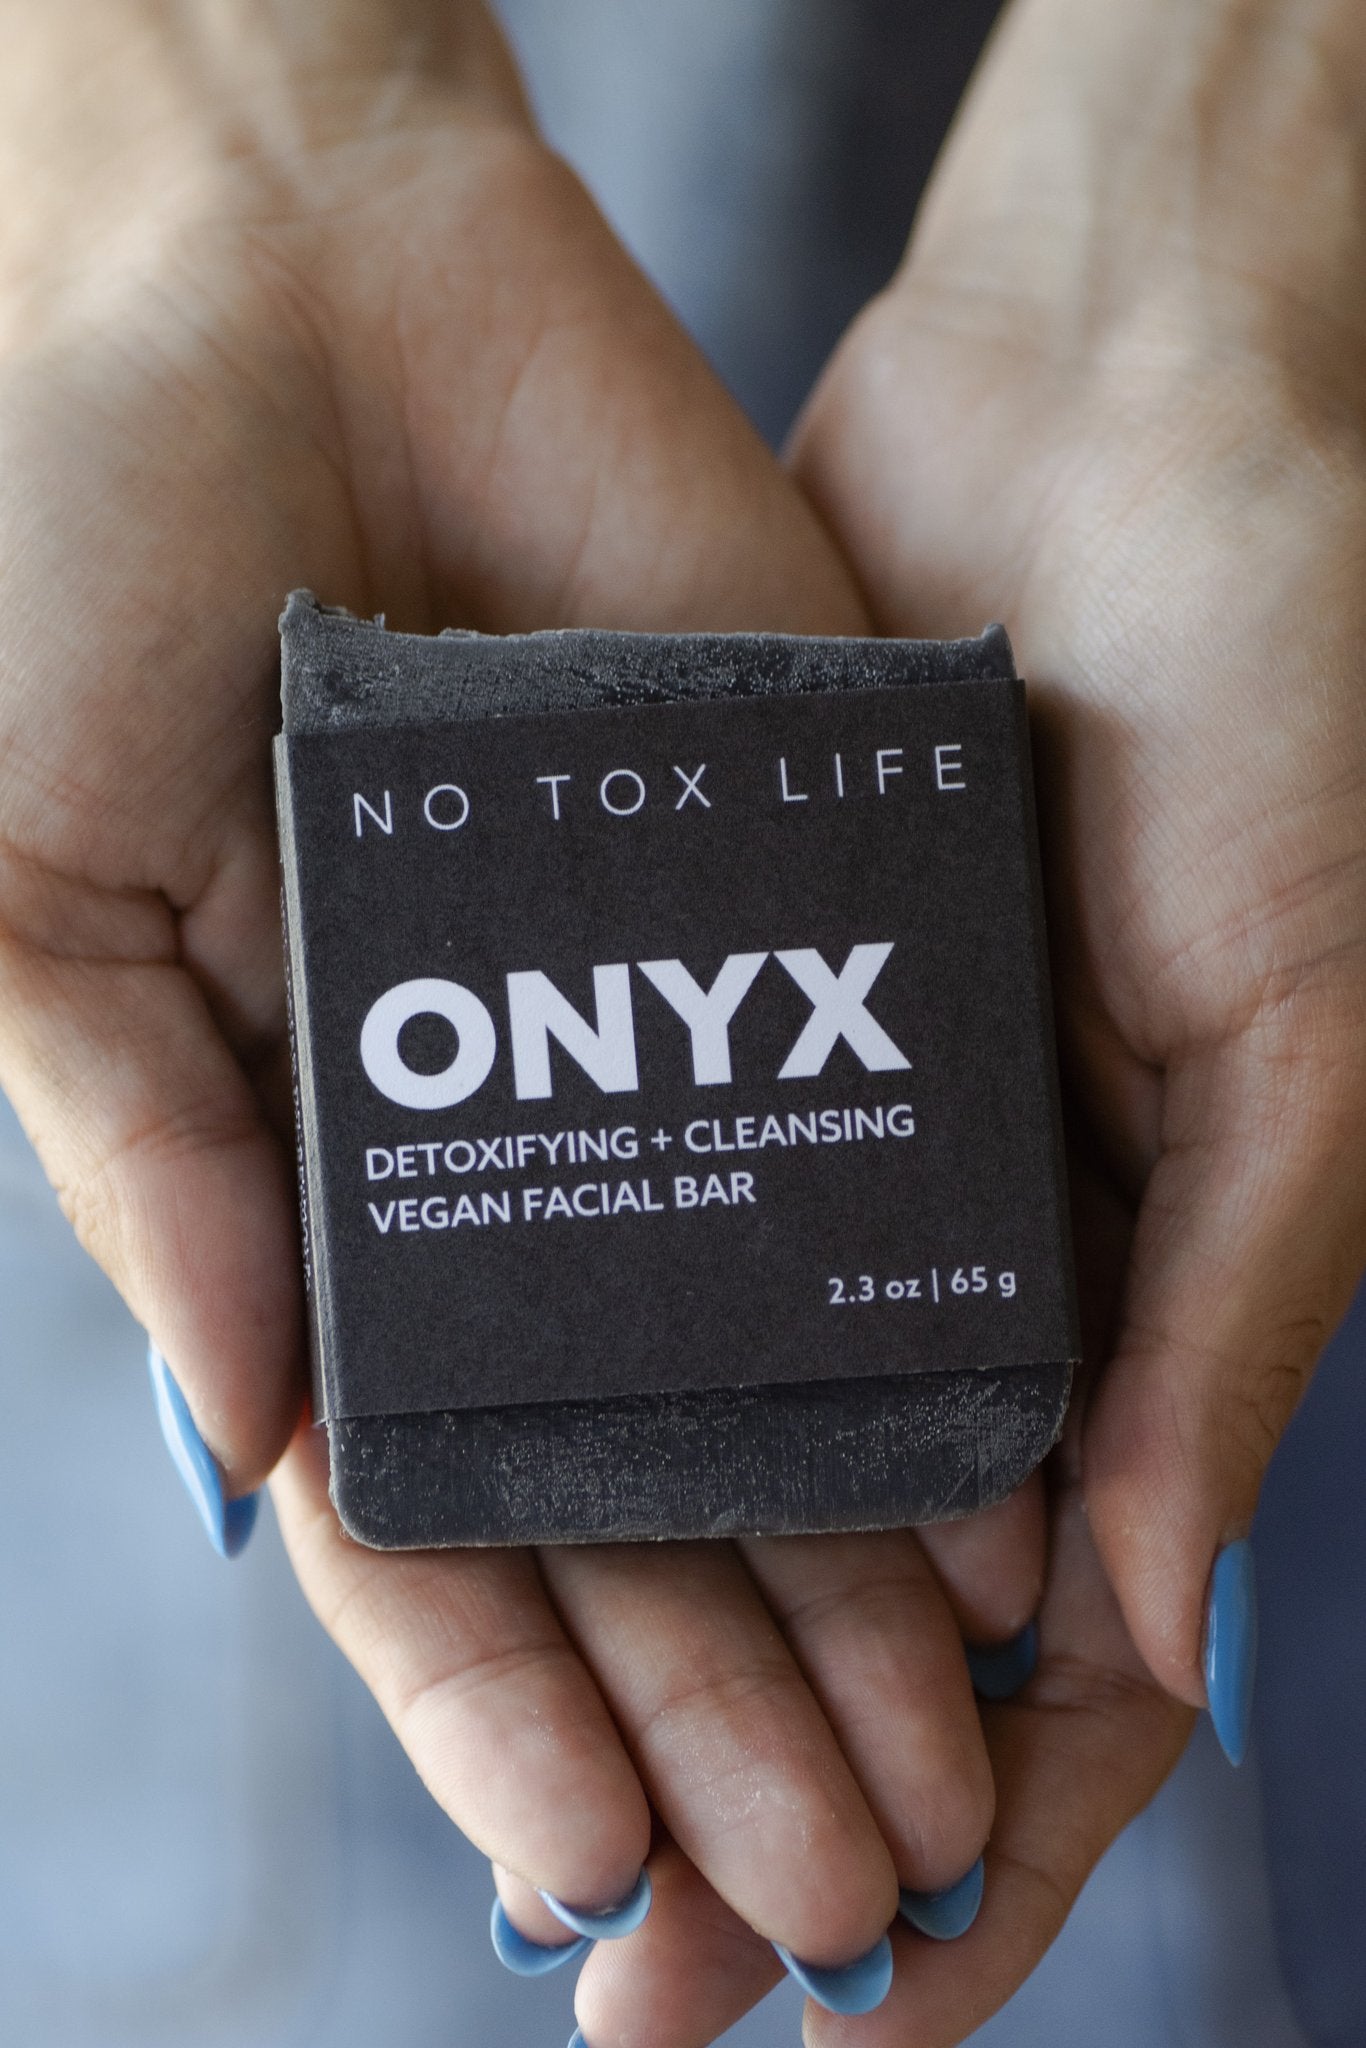 Onyx Detoxifying Vegan Facial Bar